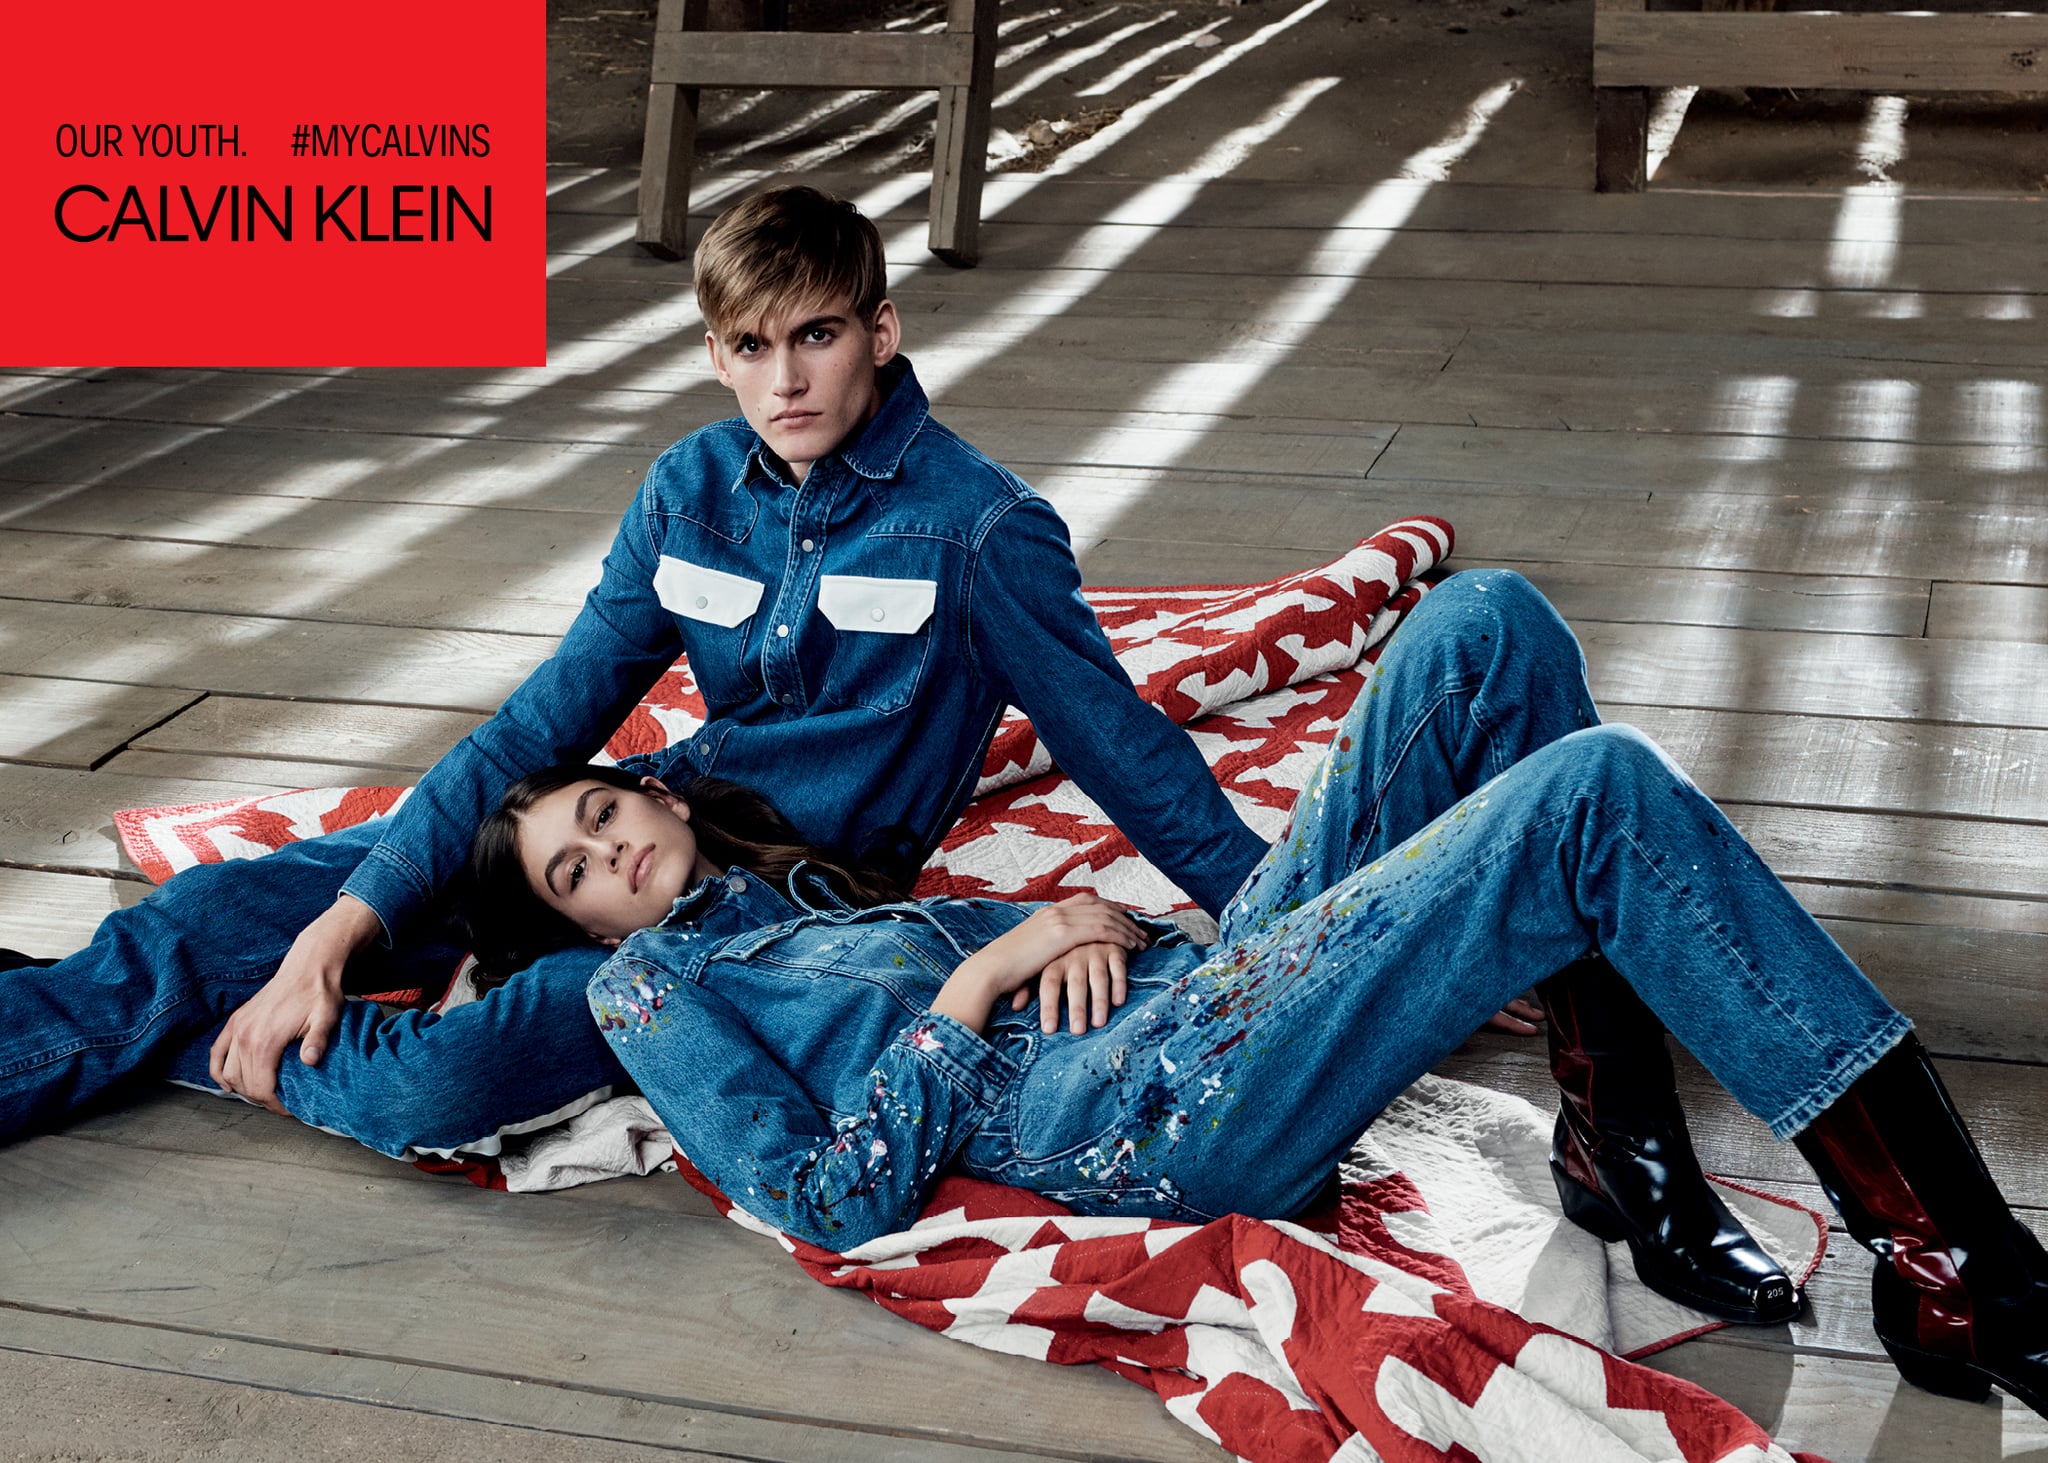 Lover og forskrifter karton drag Kaia and Presley Gerber Calvin Klein Campaign Spring 2018 | POPSUGAR Fashion